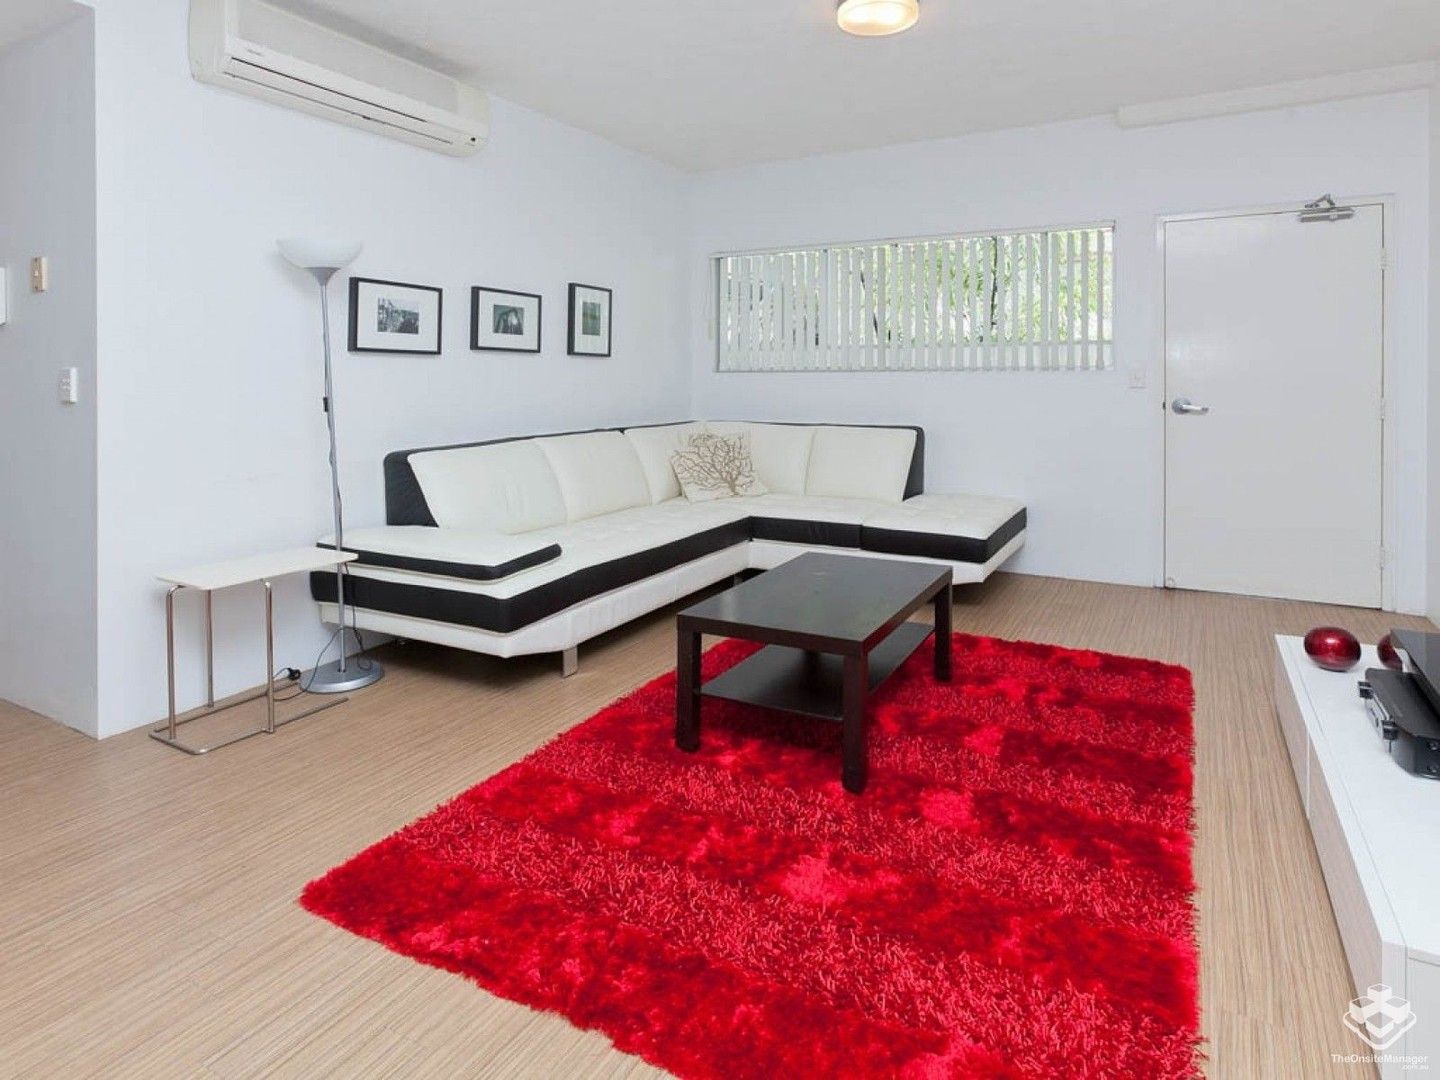 3 bedrooms Apartment / Unit / Flat in ID:21135290/1 Ella Street NEWSTEAD QLD, 4006